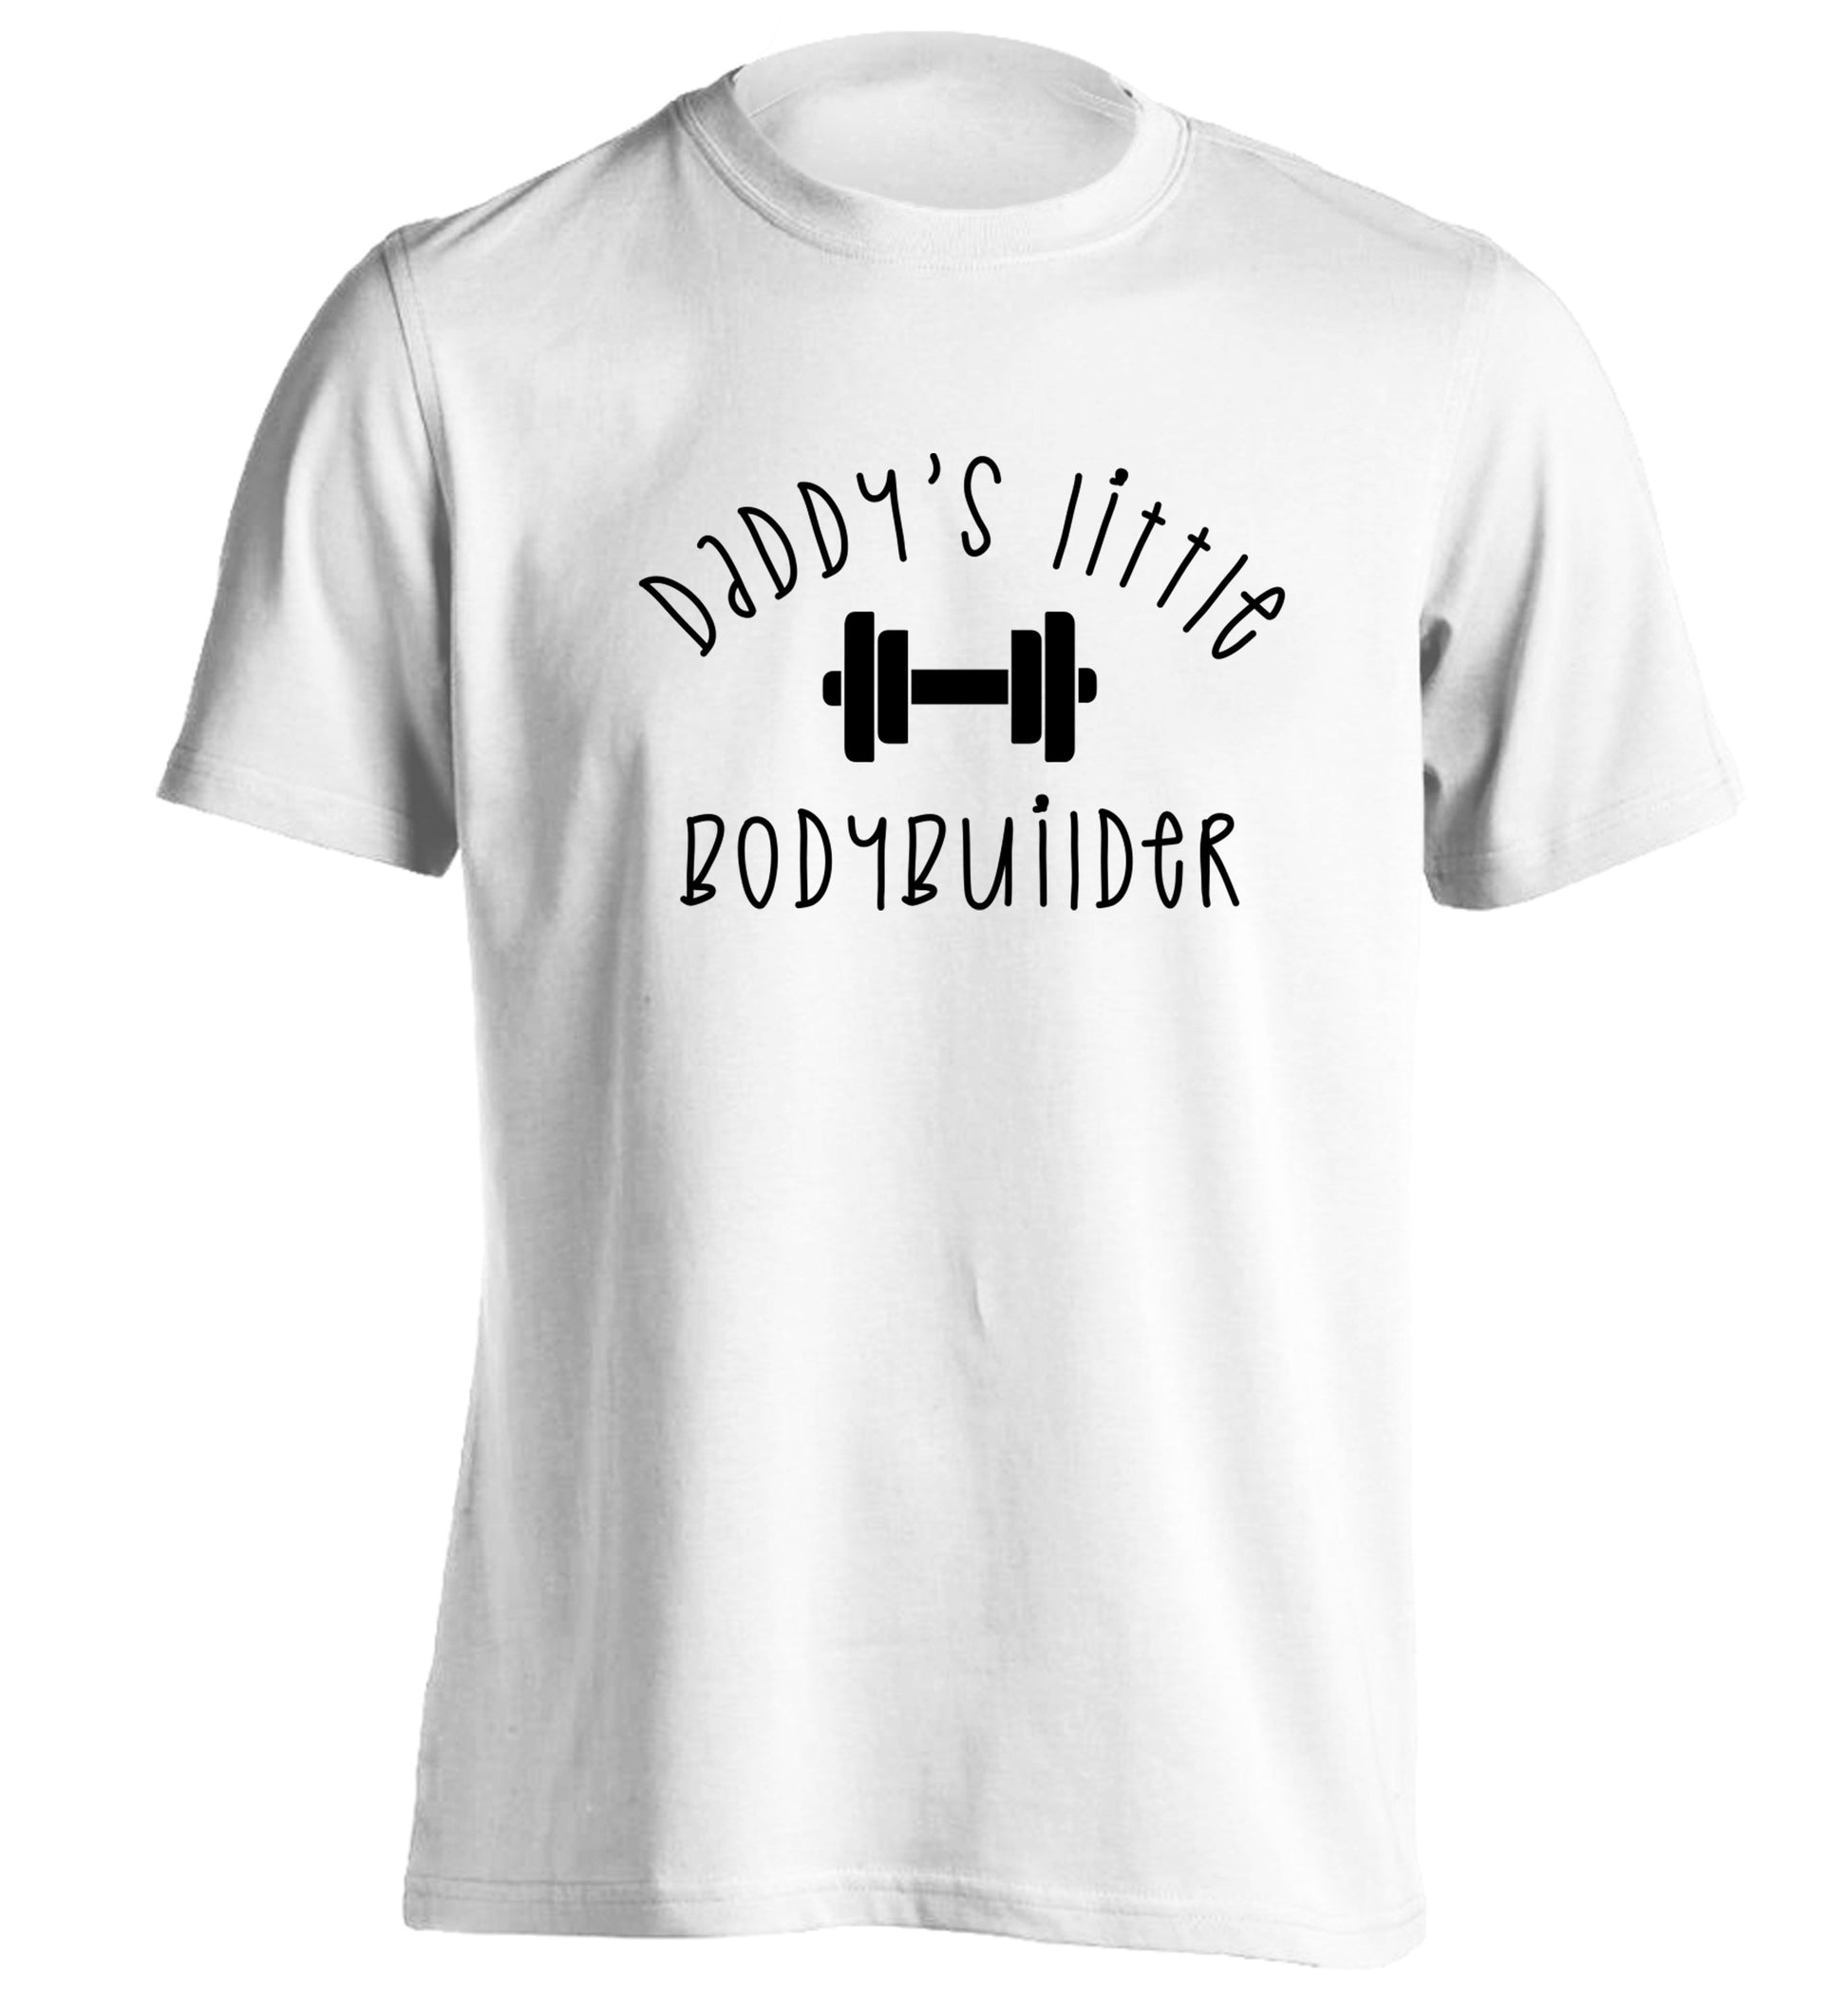 Daddy's little bodybuilder adults unisex white Tshirt 2XL